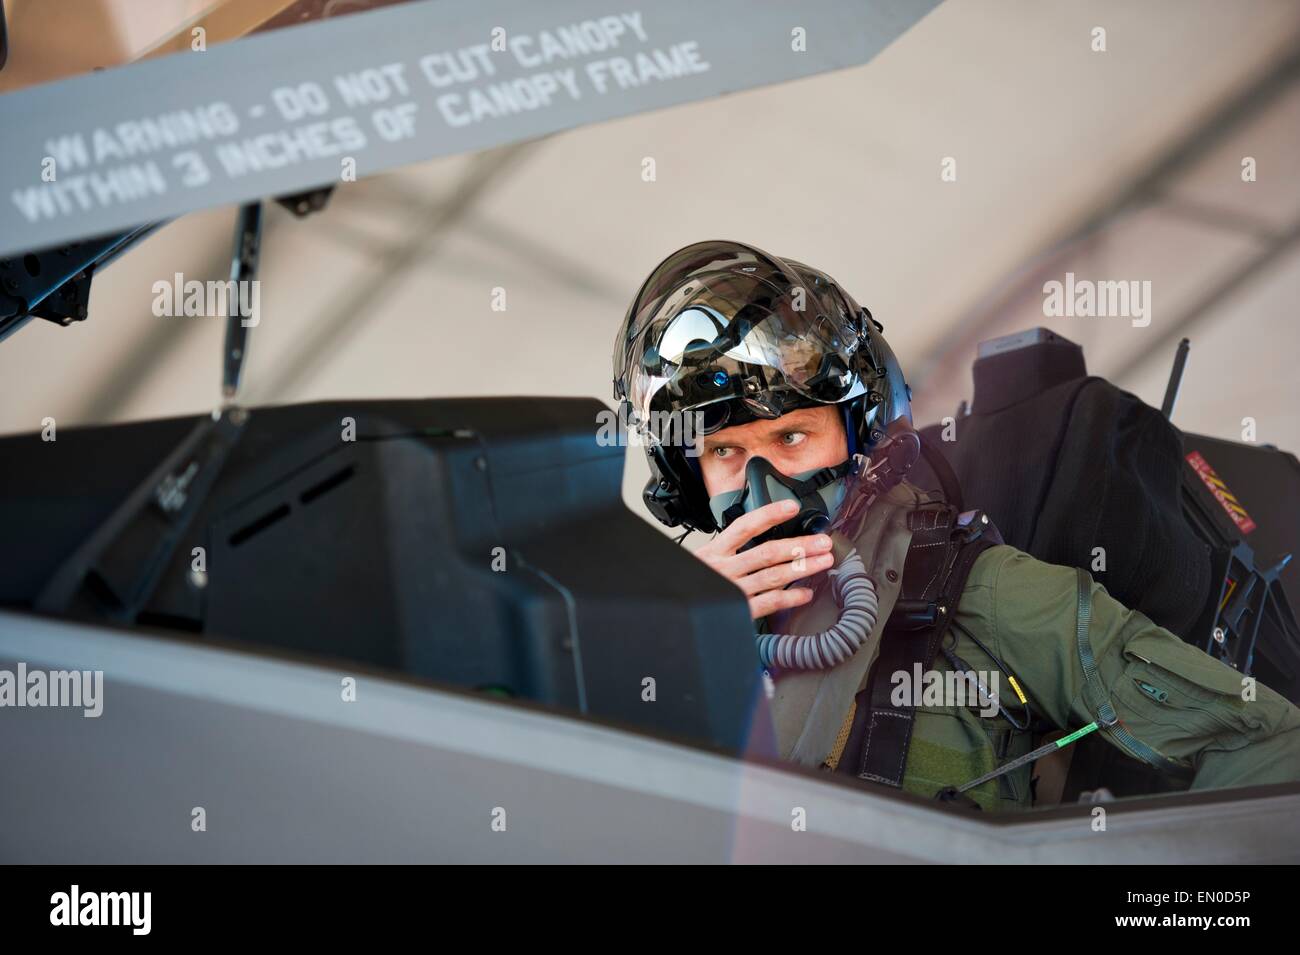 Royal Australian Air Force Squadron Leader Andrew Jackson, F-35 Lightning II élève-pilote, se prépare à quitter son F-35A après avoir terminé son dernier vol le 23 avril 2015 sur la base aérienne d'Eglin, en Floride. Jackson a fait l'histoire comme le premier pilote australien à voler dans le F-35A. Banque D'Images